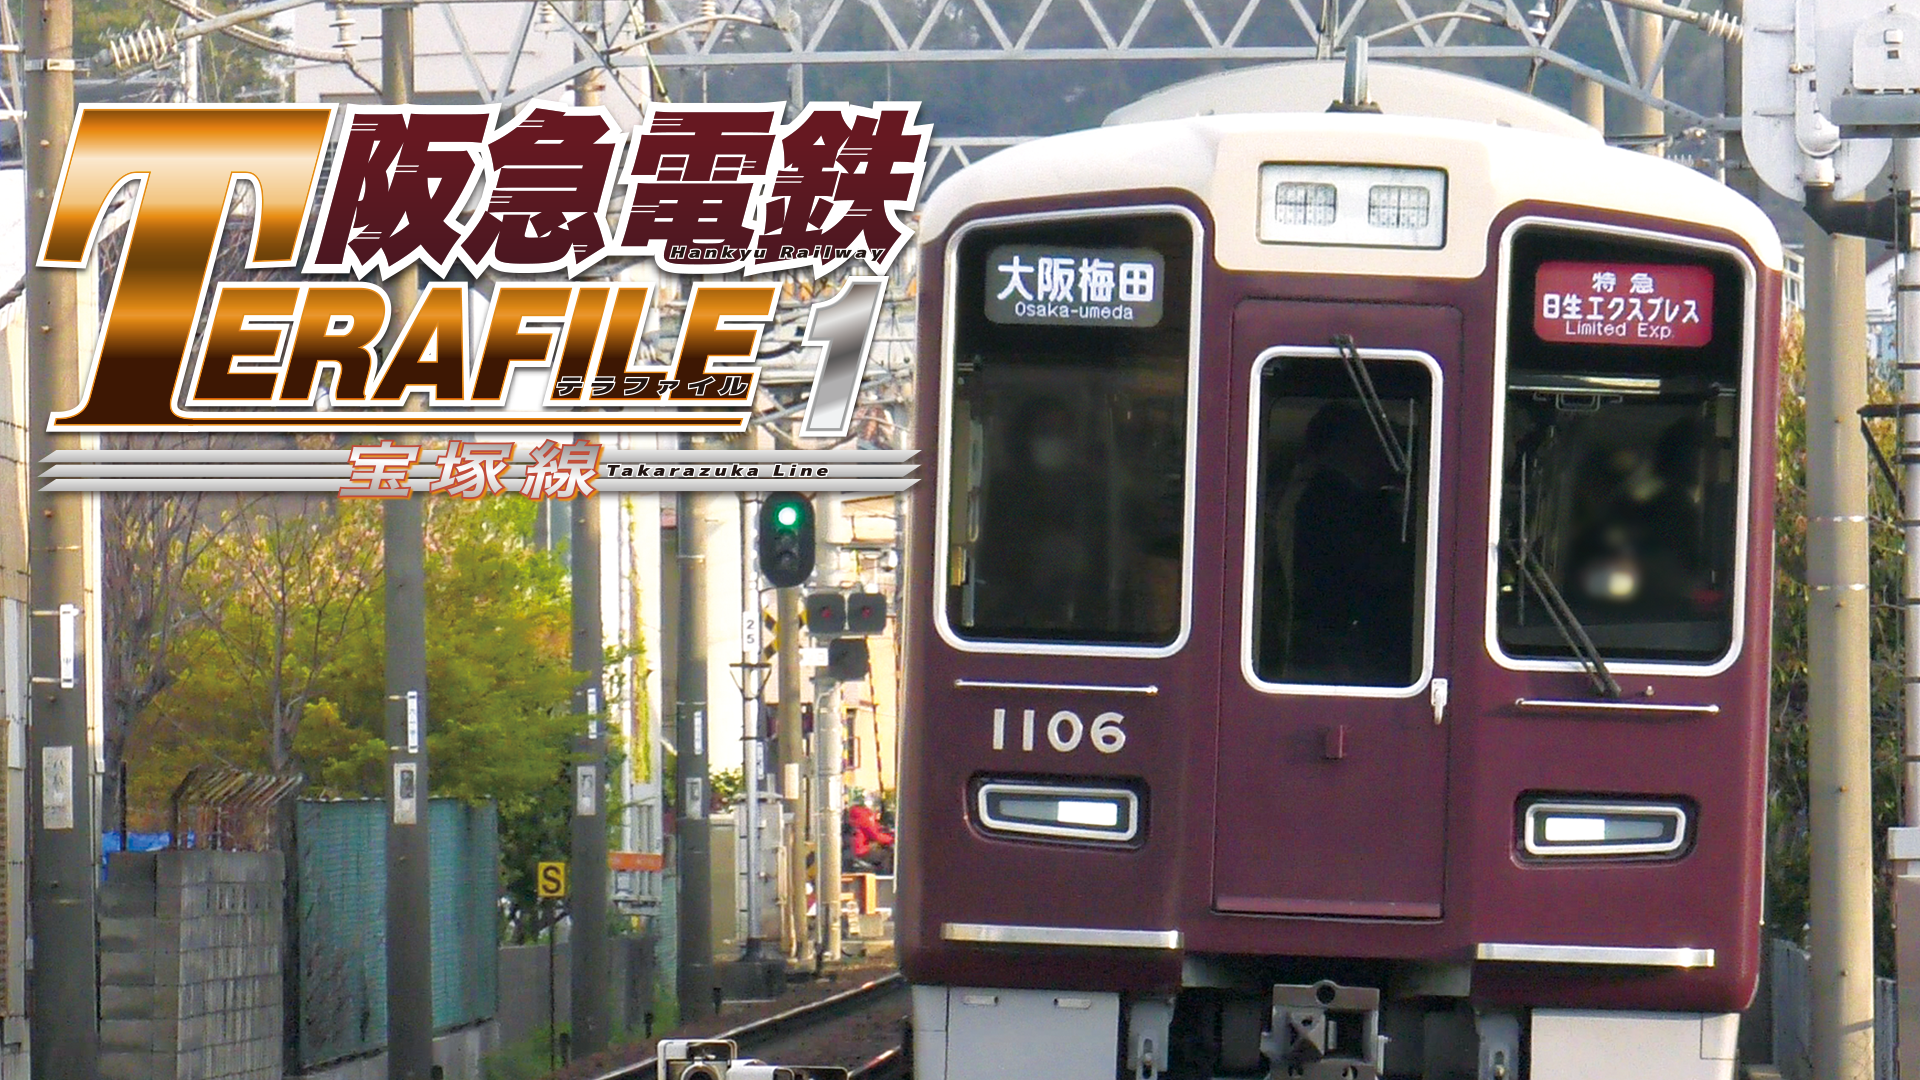 阪急電鉄テラファイル2 神戸線(バラエティ / 2020) - 動画配信 | U-NEXT 31日間無料トライアル